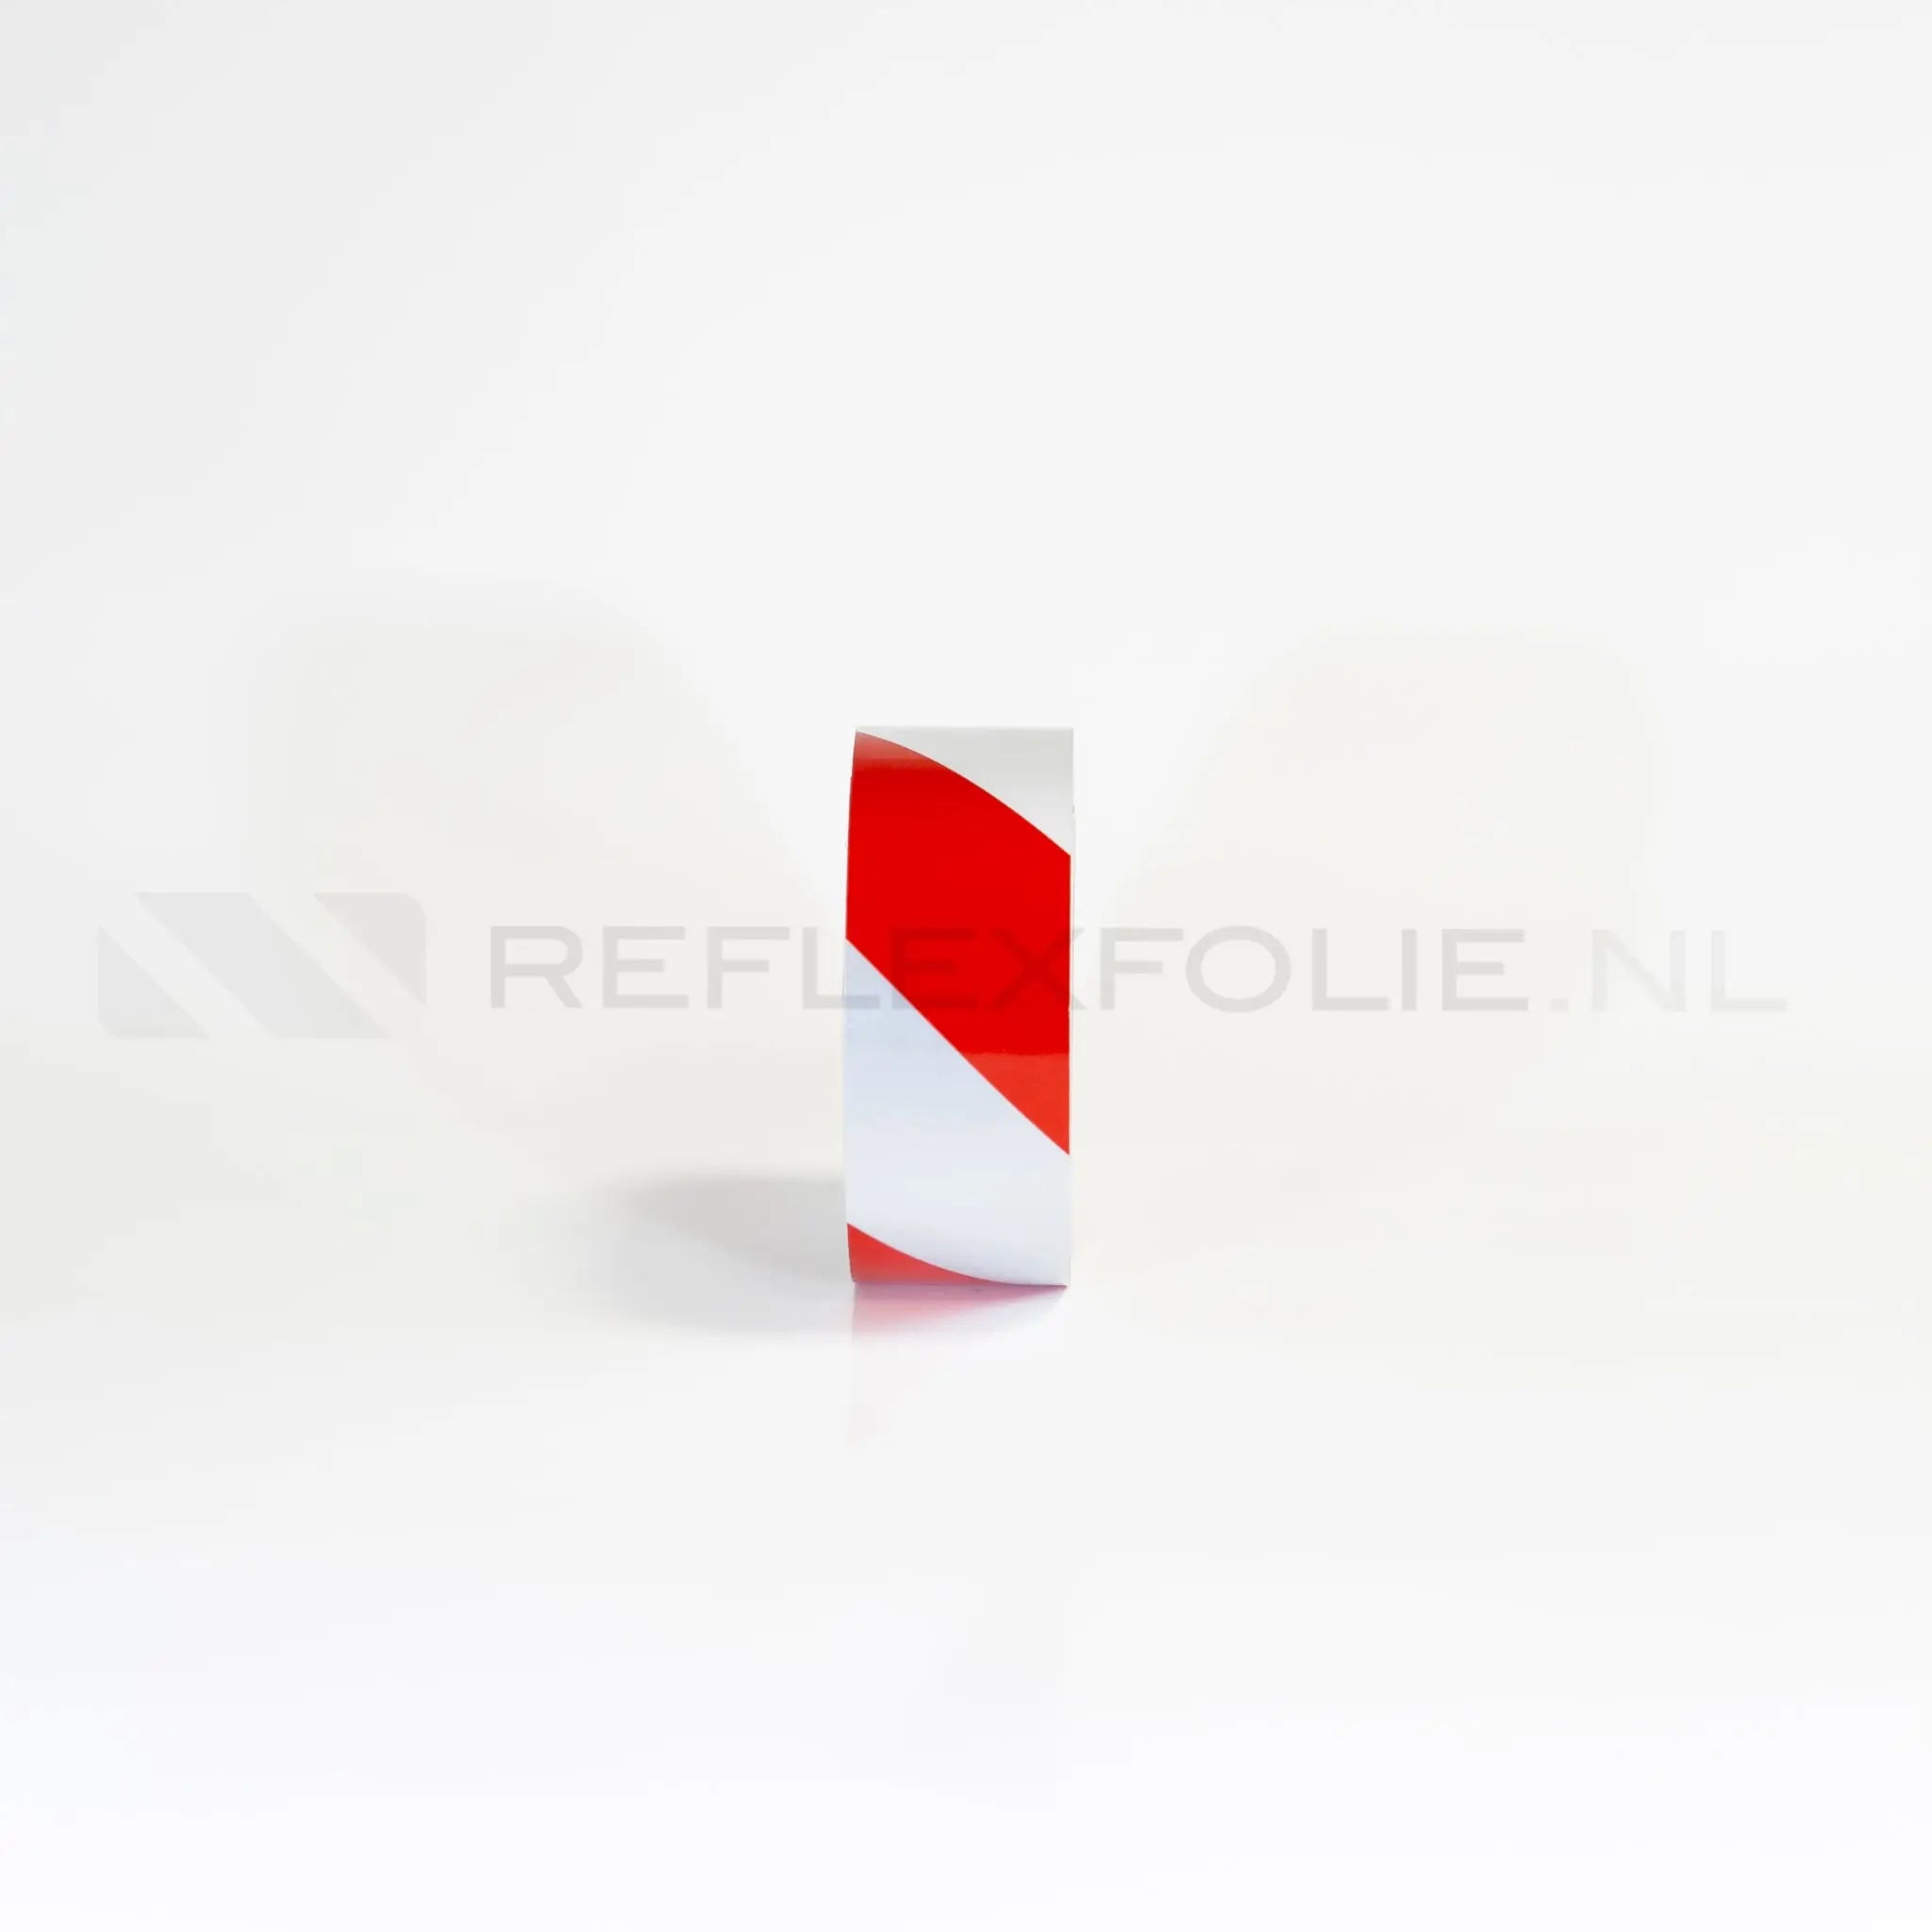 Markeringsband rood/wit rechtswijzend 50 mm x 22,5 meter - Reflexfolie